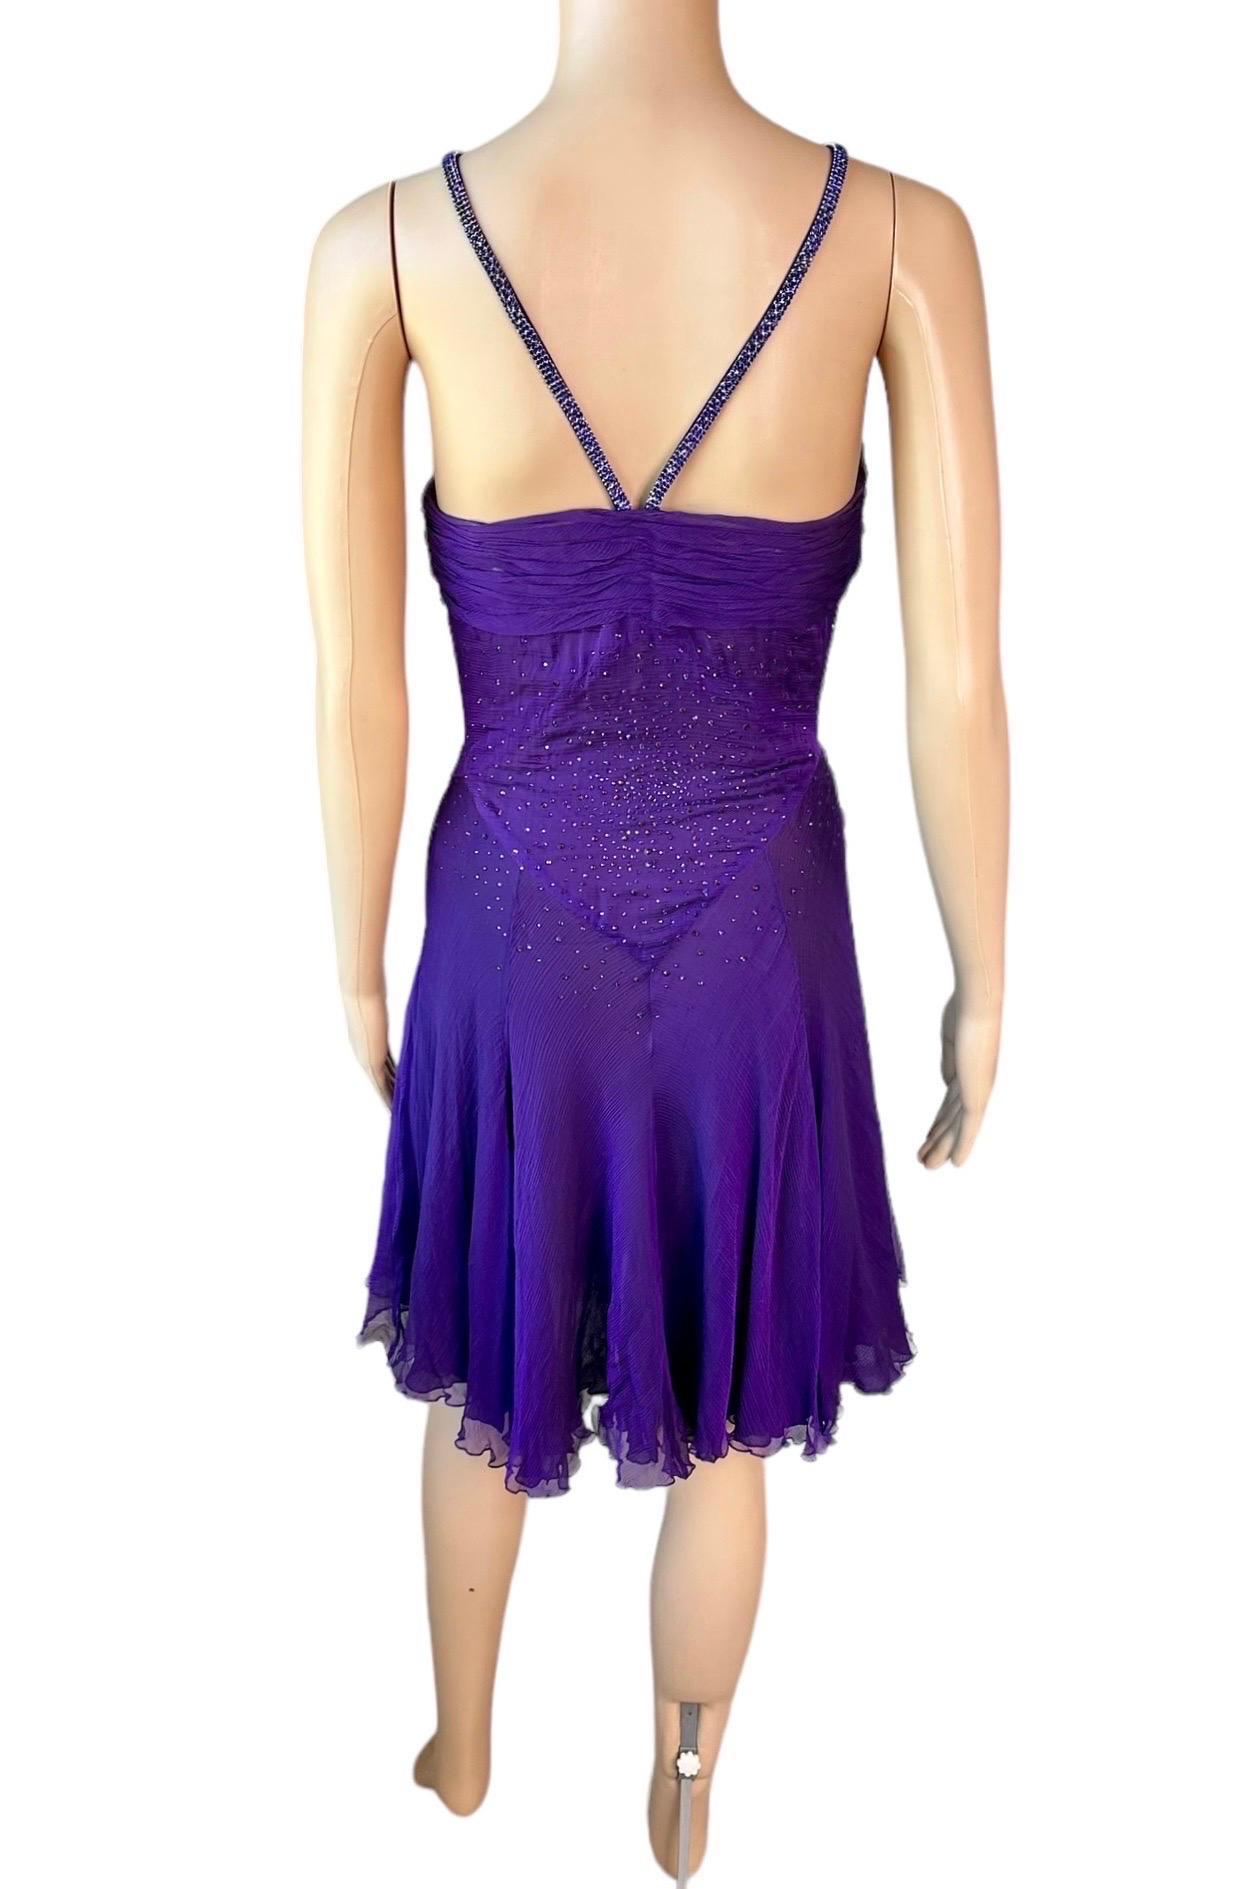 Versace c.2007 Crystal Embellished Plunging Neckline Semi-Sheer Purple Dress For Sale 5